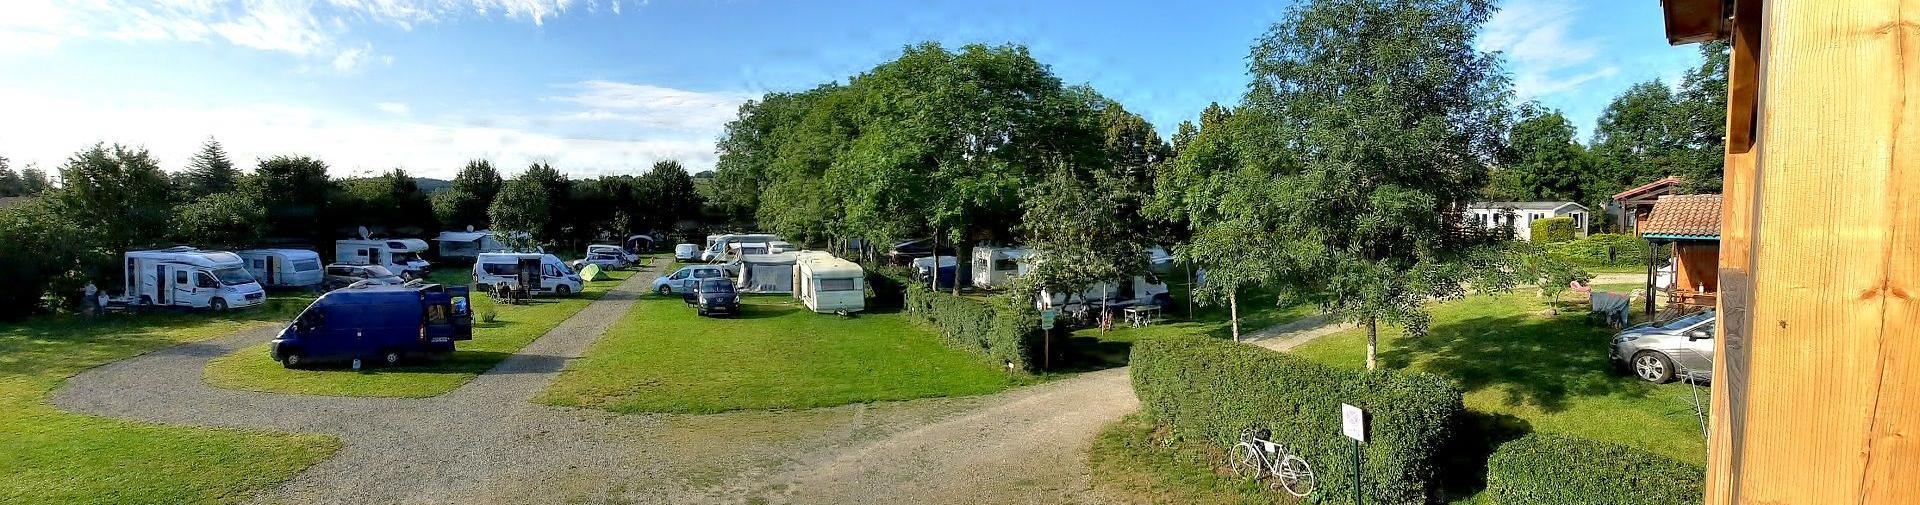 Terrain pour grande caravane et camping-car Puy de Dôme - emplacement caravanne camping car 4